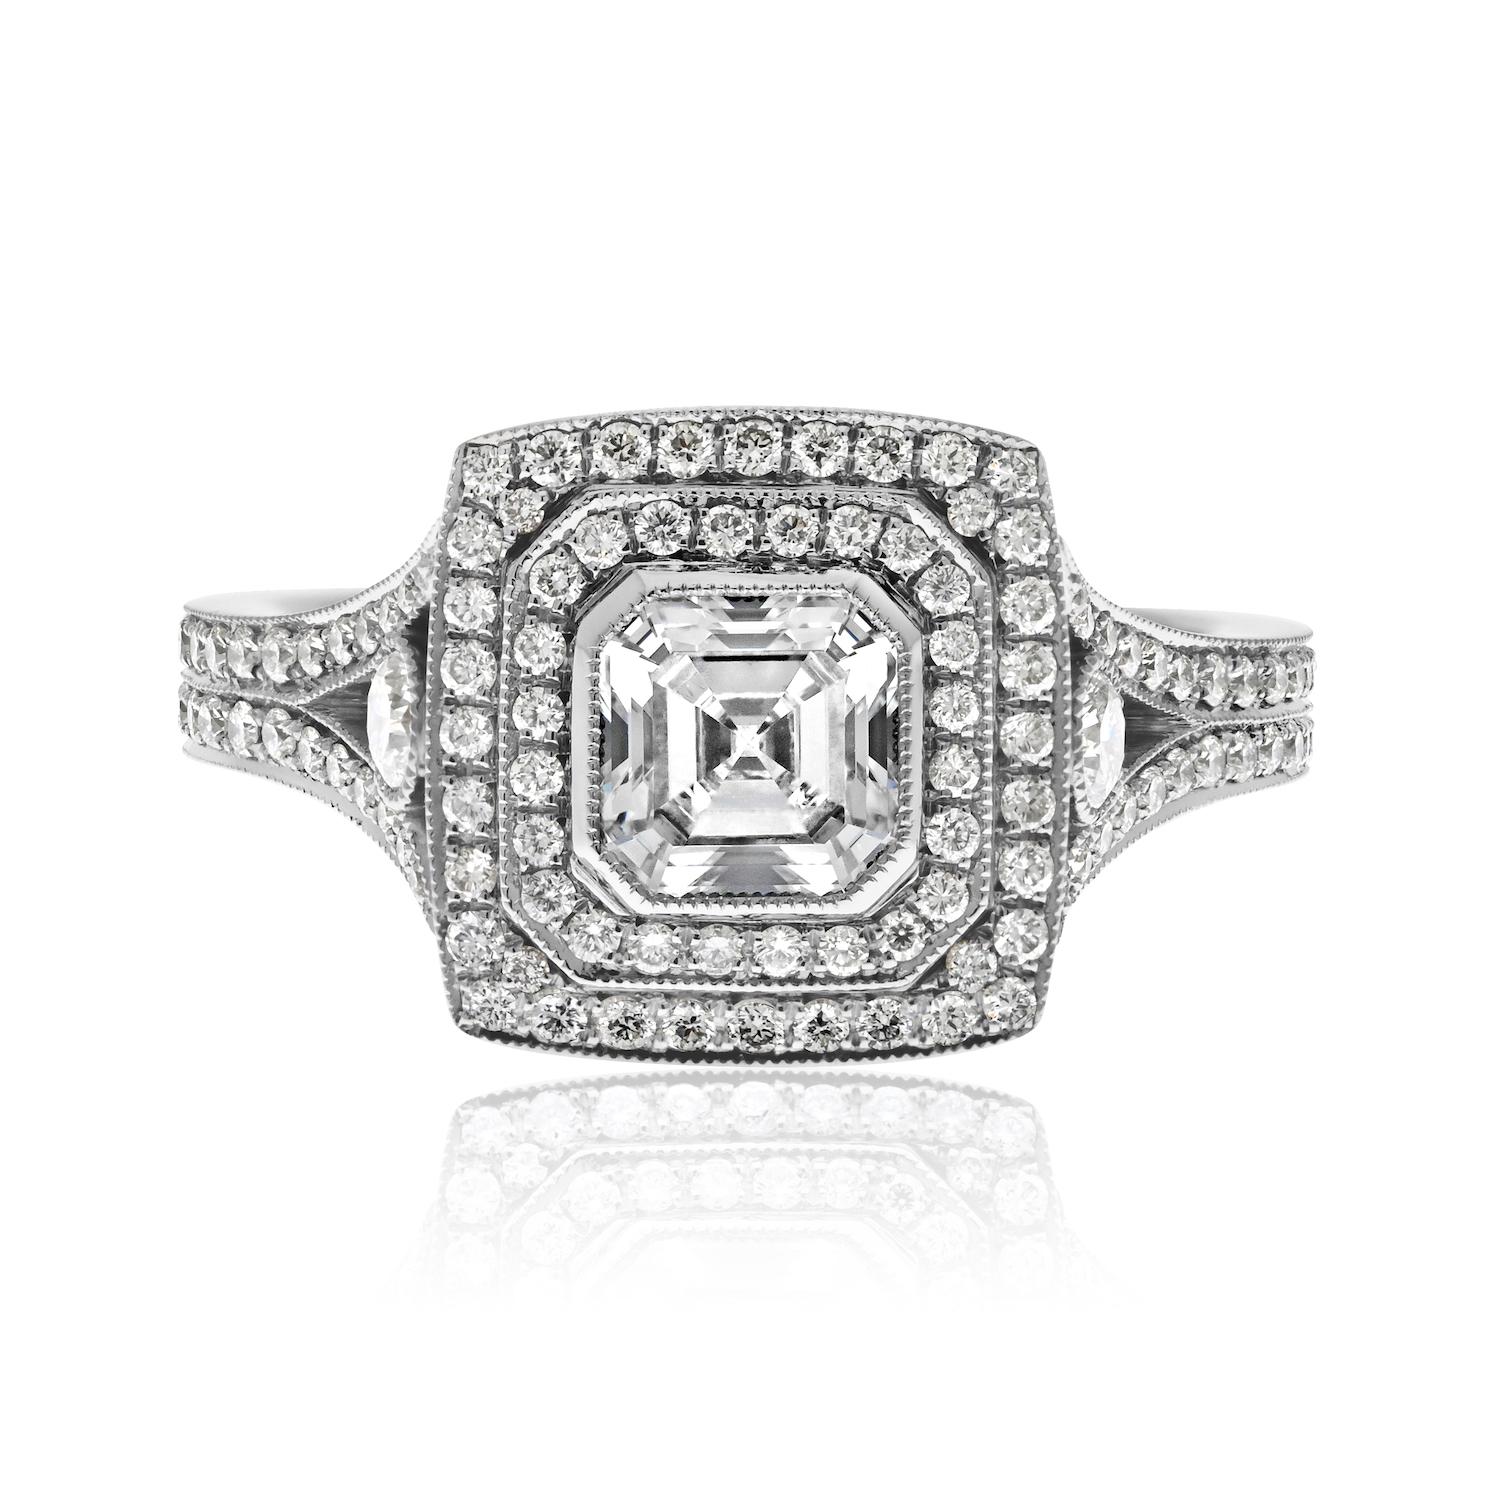 Der handgefertigte Ring zeigt einen prächtigen Diamanten im Asscher-Schliff, der von einem doppelten Pave-Halo umgeben ist und elegant auf einem geteilten Schaft sitzt. Schauen wir uns die Details an, die diesen Ring zu einem wahren Schmuckstück